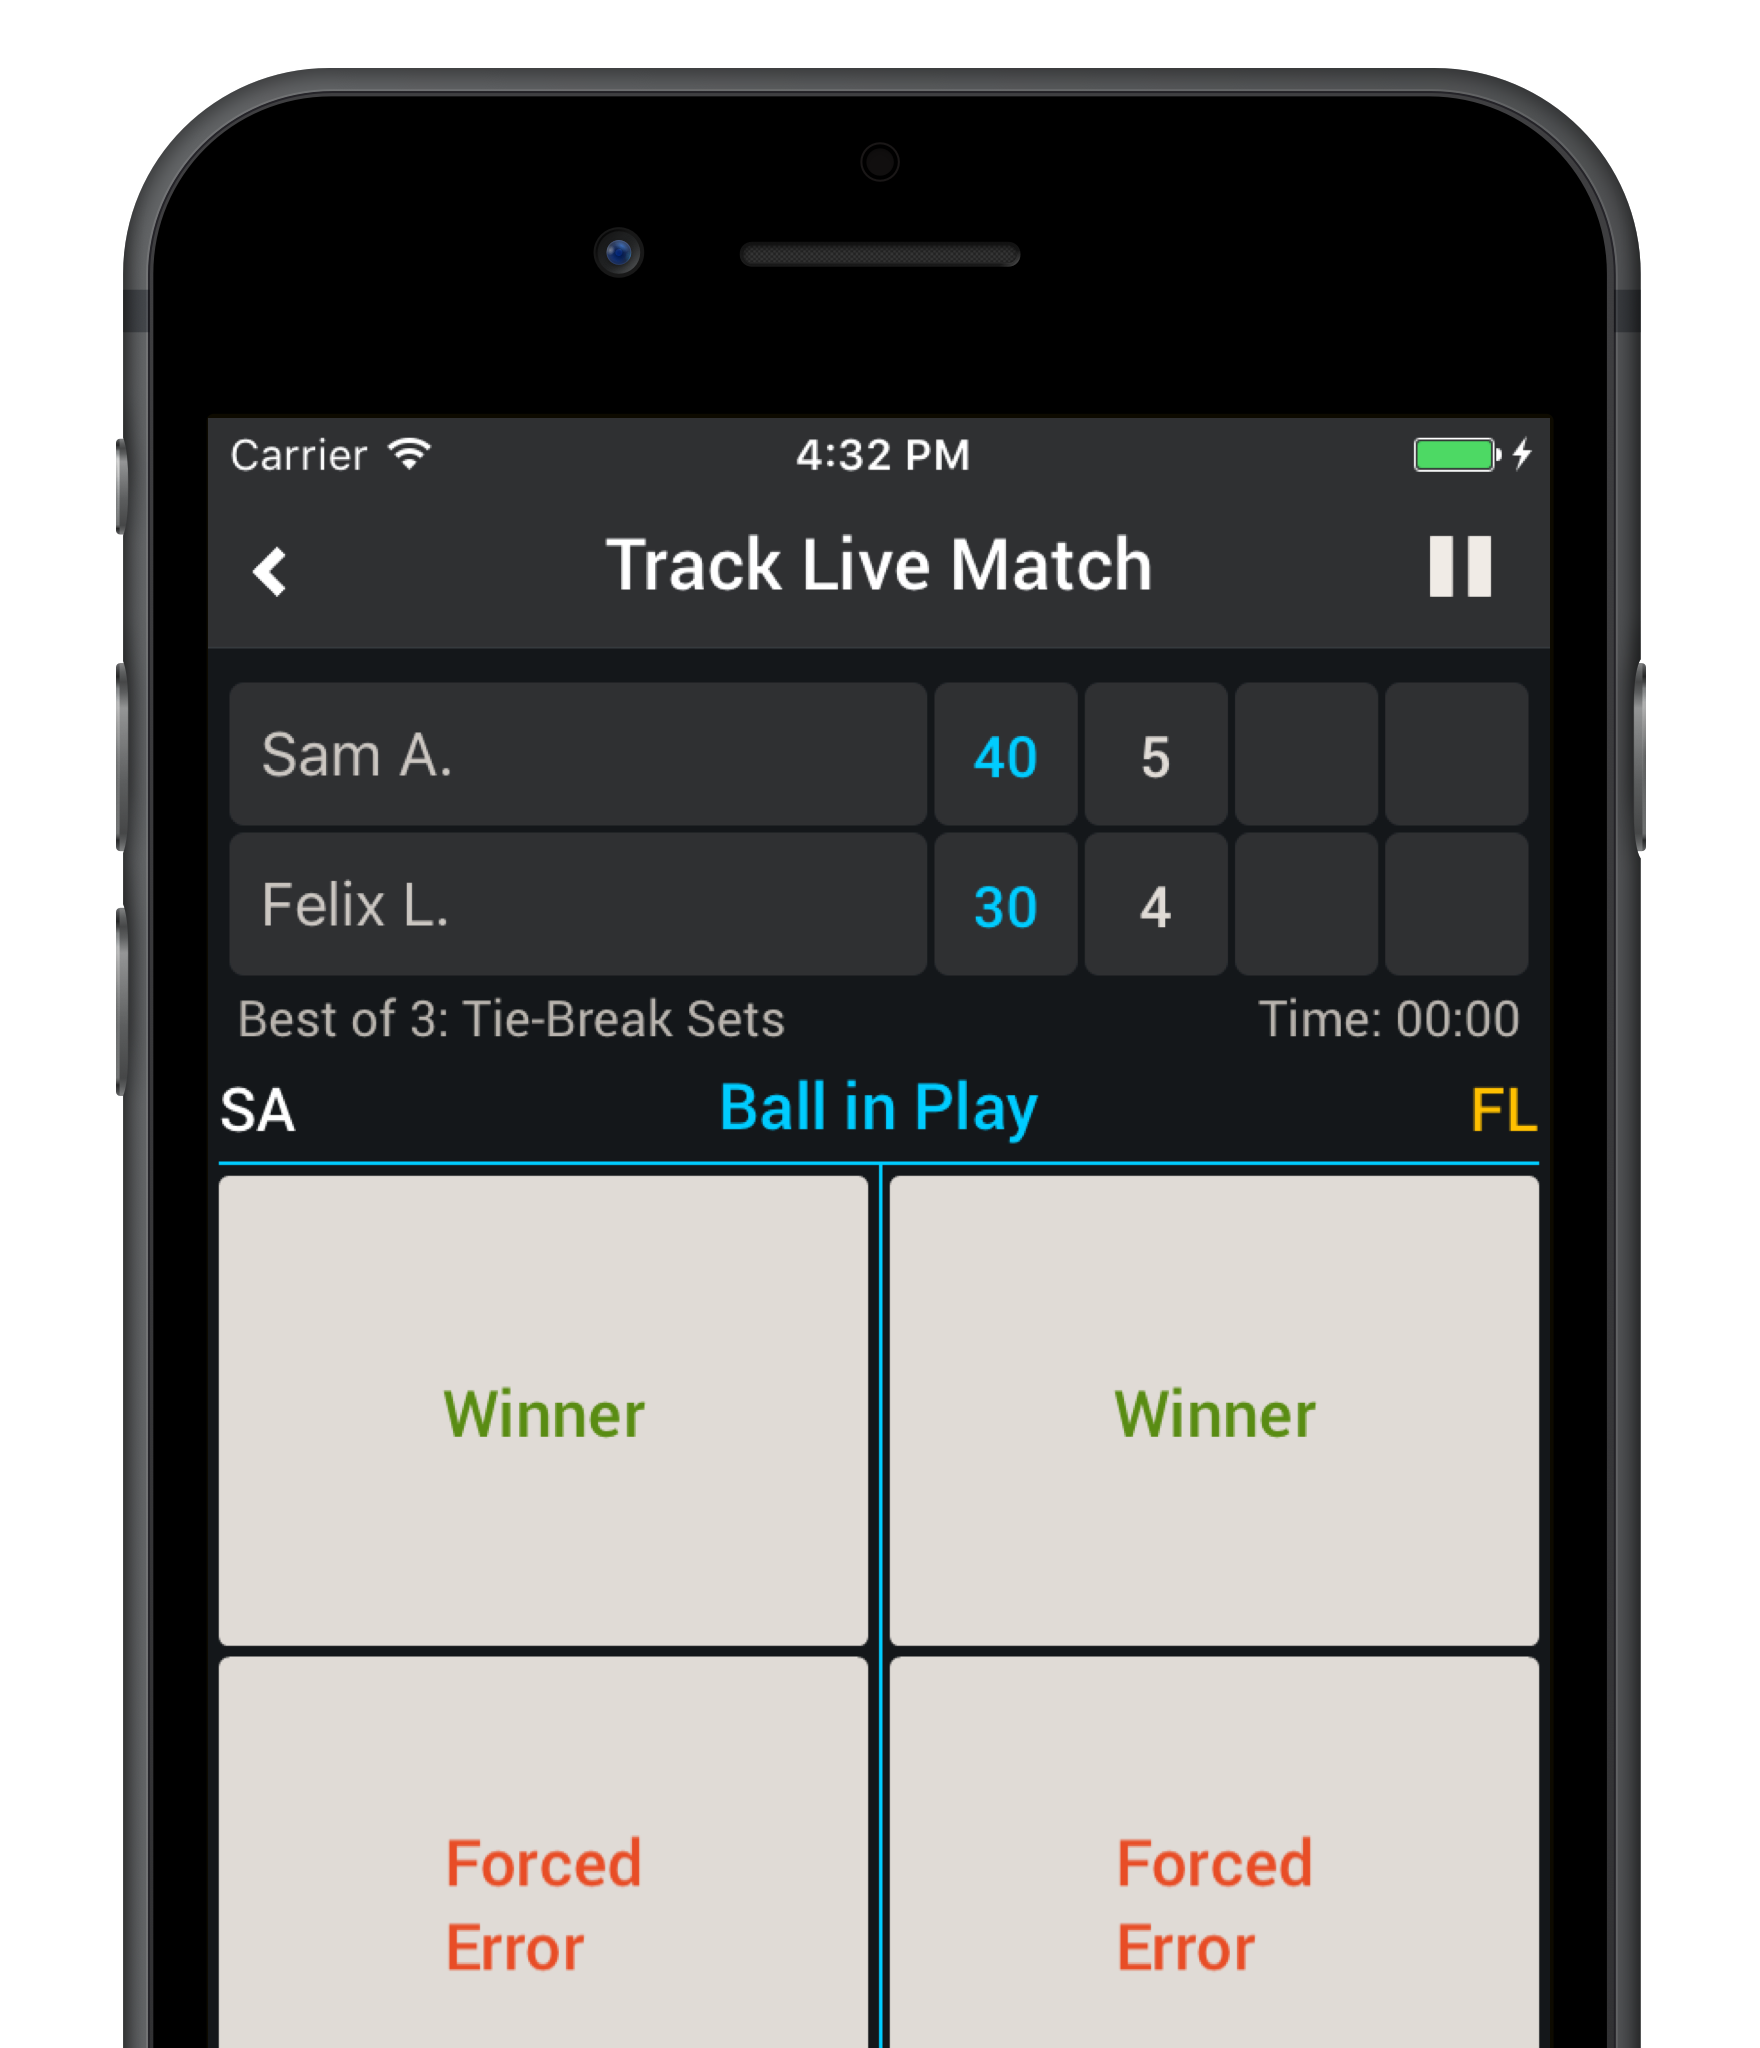 Tennis Match Charting Software